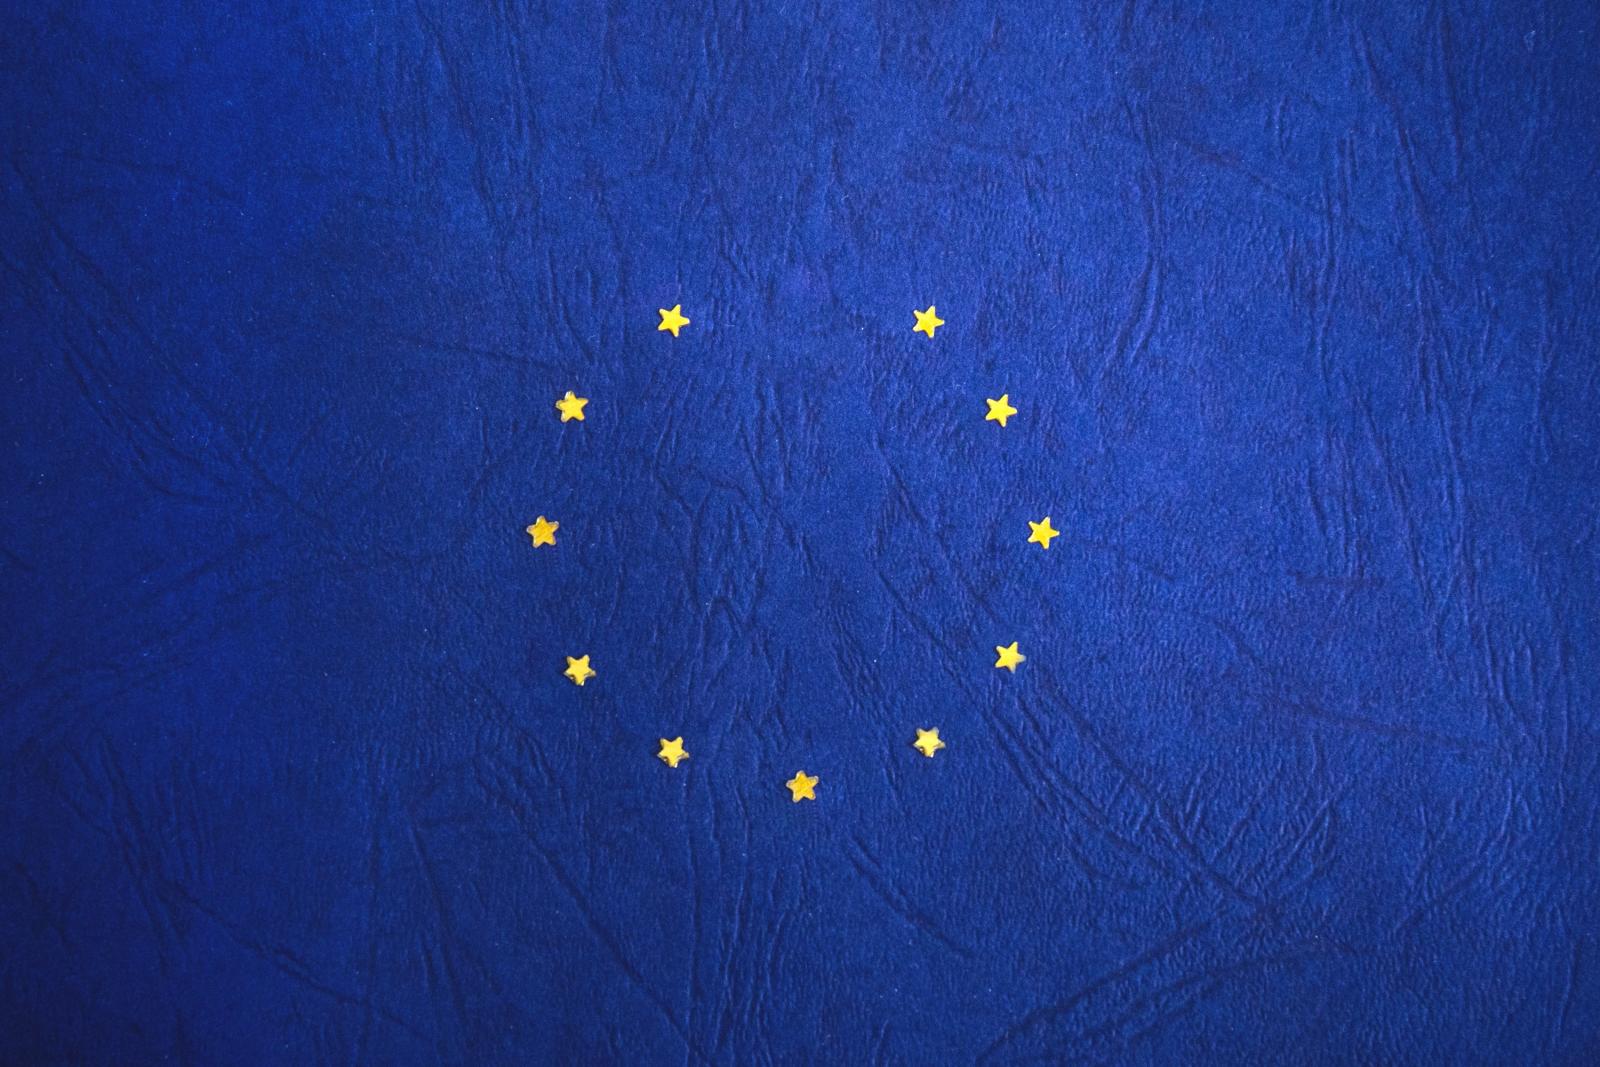 EU flag missing a star. Credit: pexels